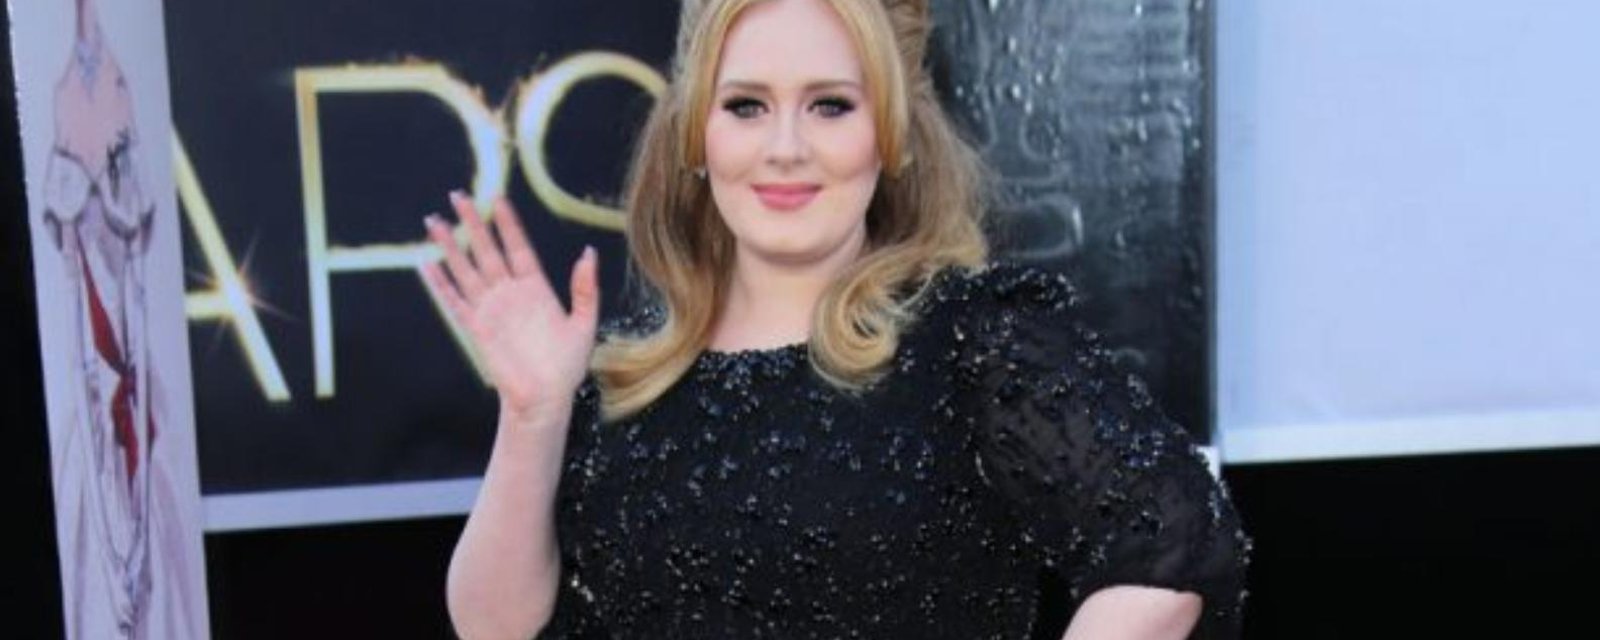 Méconnaissable... la chanteuse Adele a fondu comme neige au soleil!